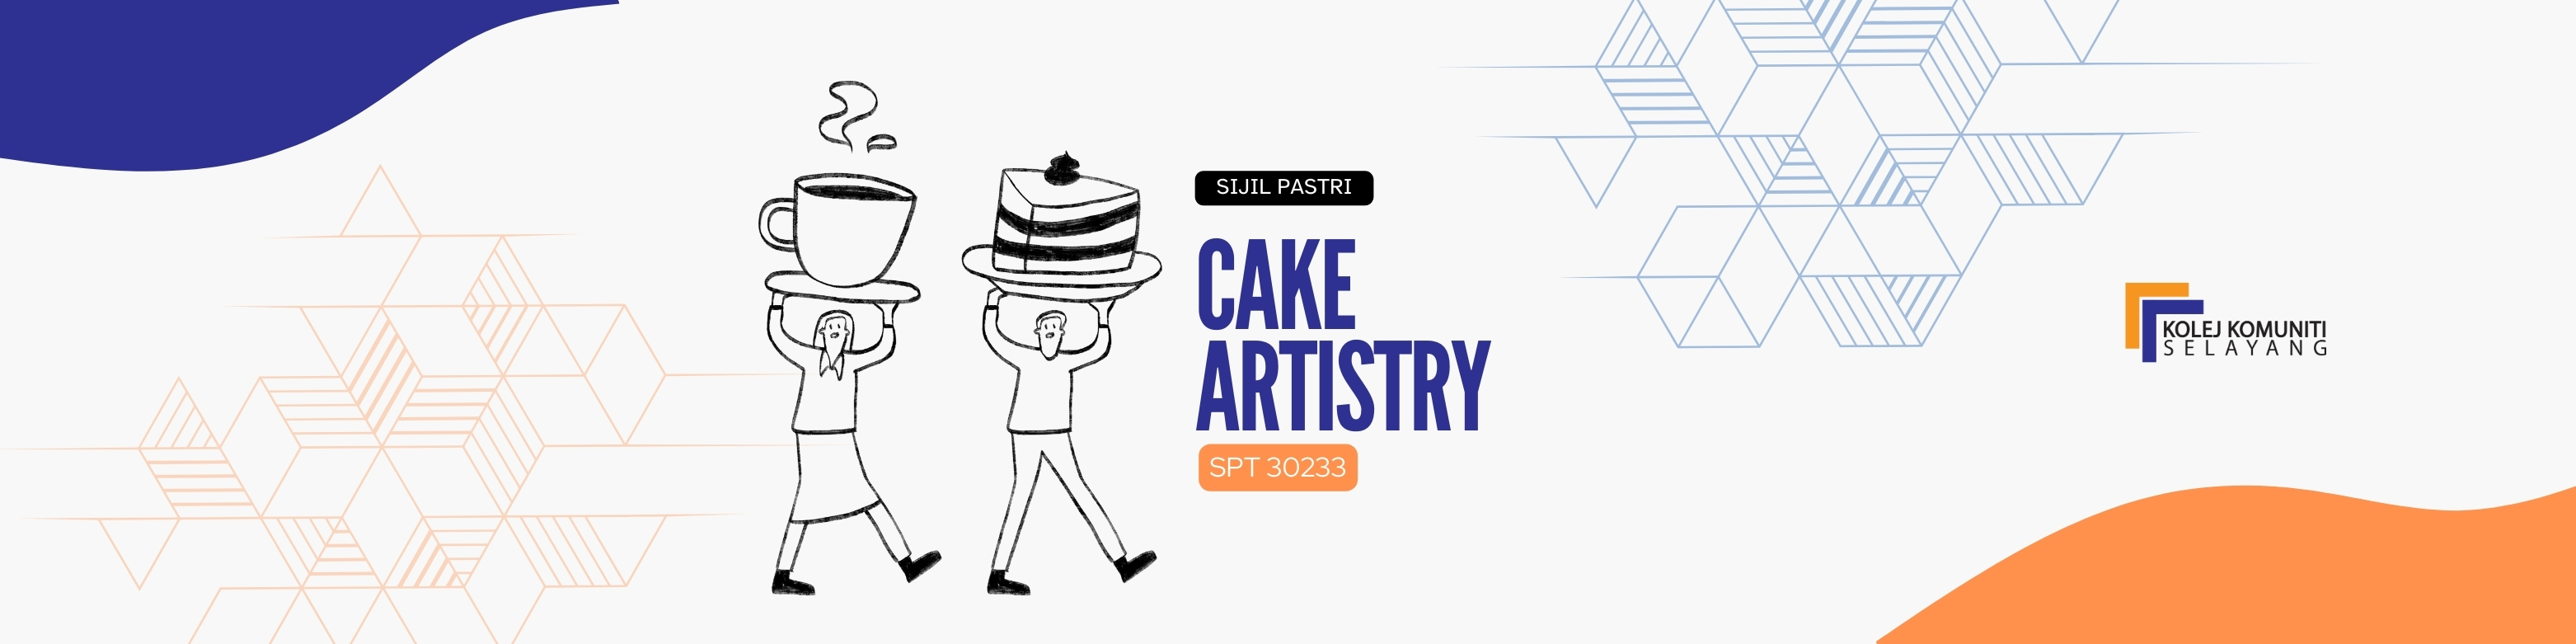 SPT30233 - CAKE ARTISTRY